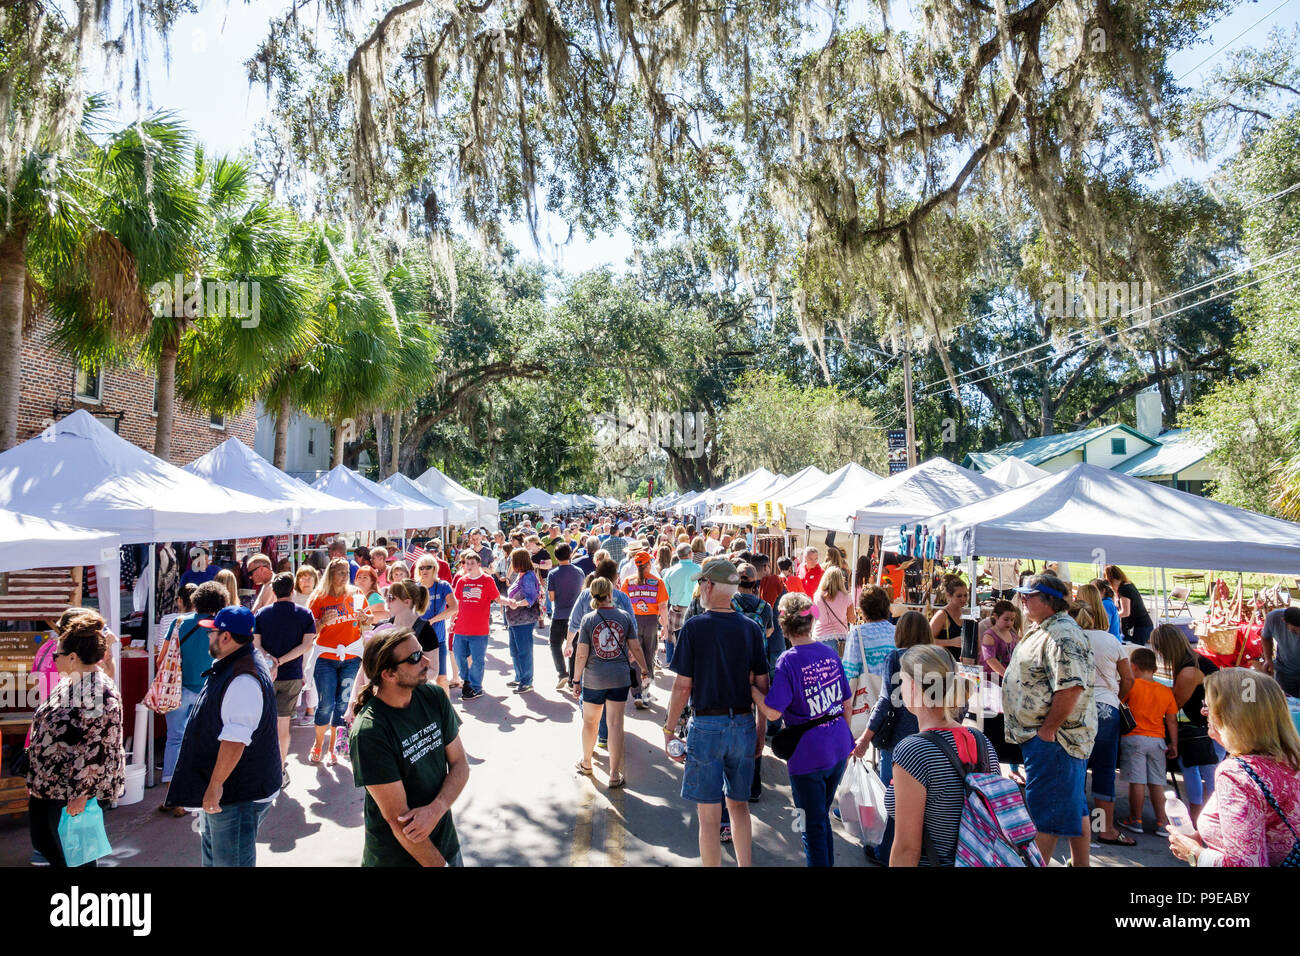 Florida, Micanopy, Herbst Harvest Festival, jährliche kleine Stadt Gemeinschaftsstände Stände Verkäufer kaufen Verkauf, Menschenmenge, Bummeln, Familien, FL171028211 Stockfoto